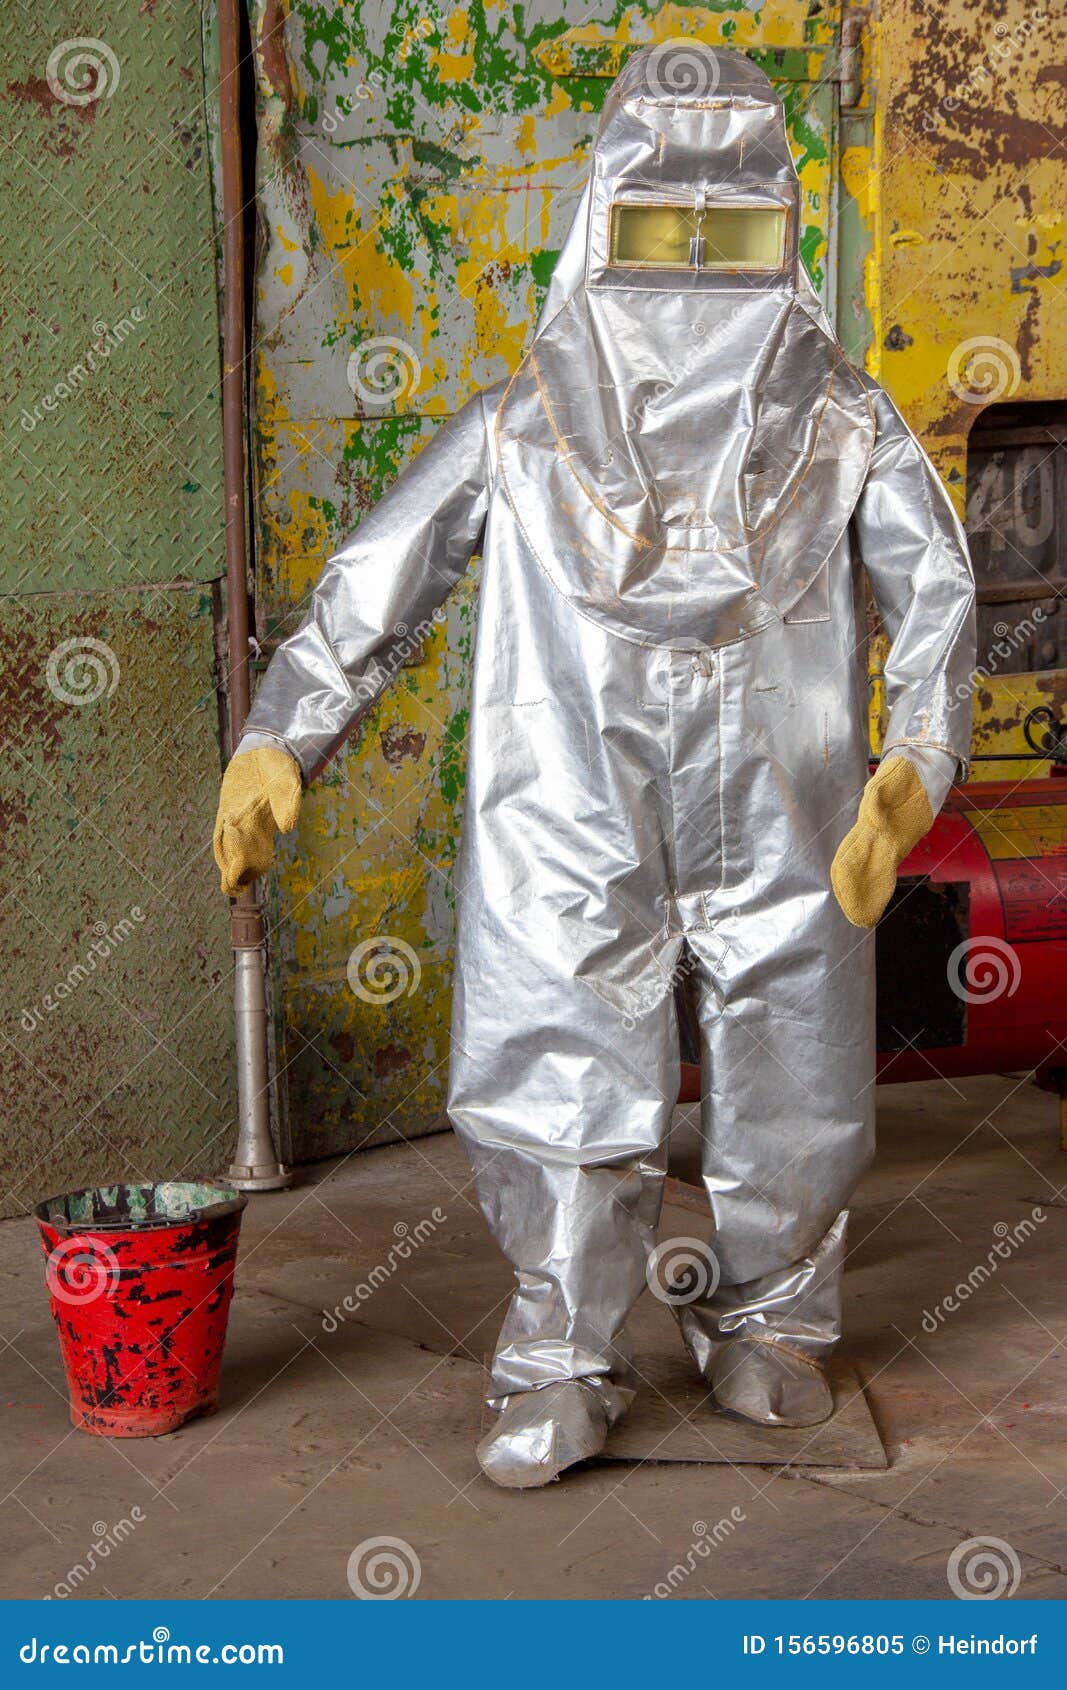 asbestos-protective-suit-factory-fire-brigade-156596805.jpg